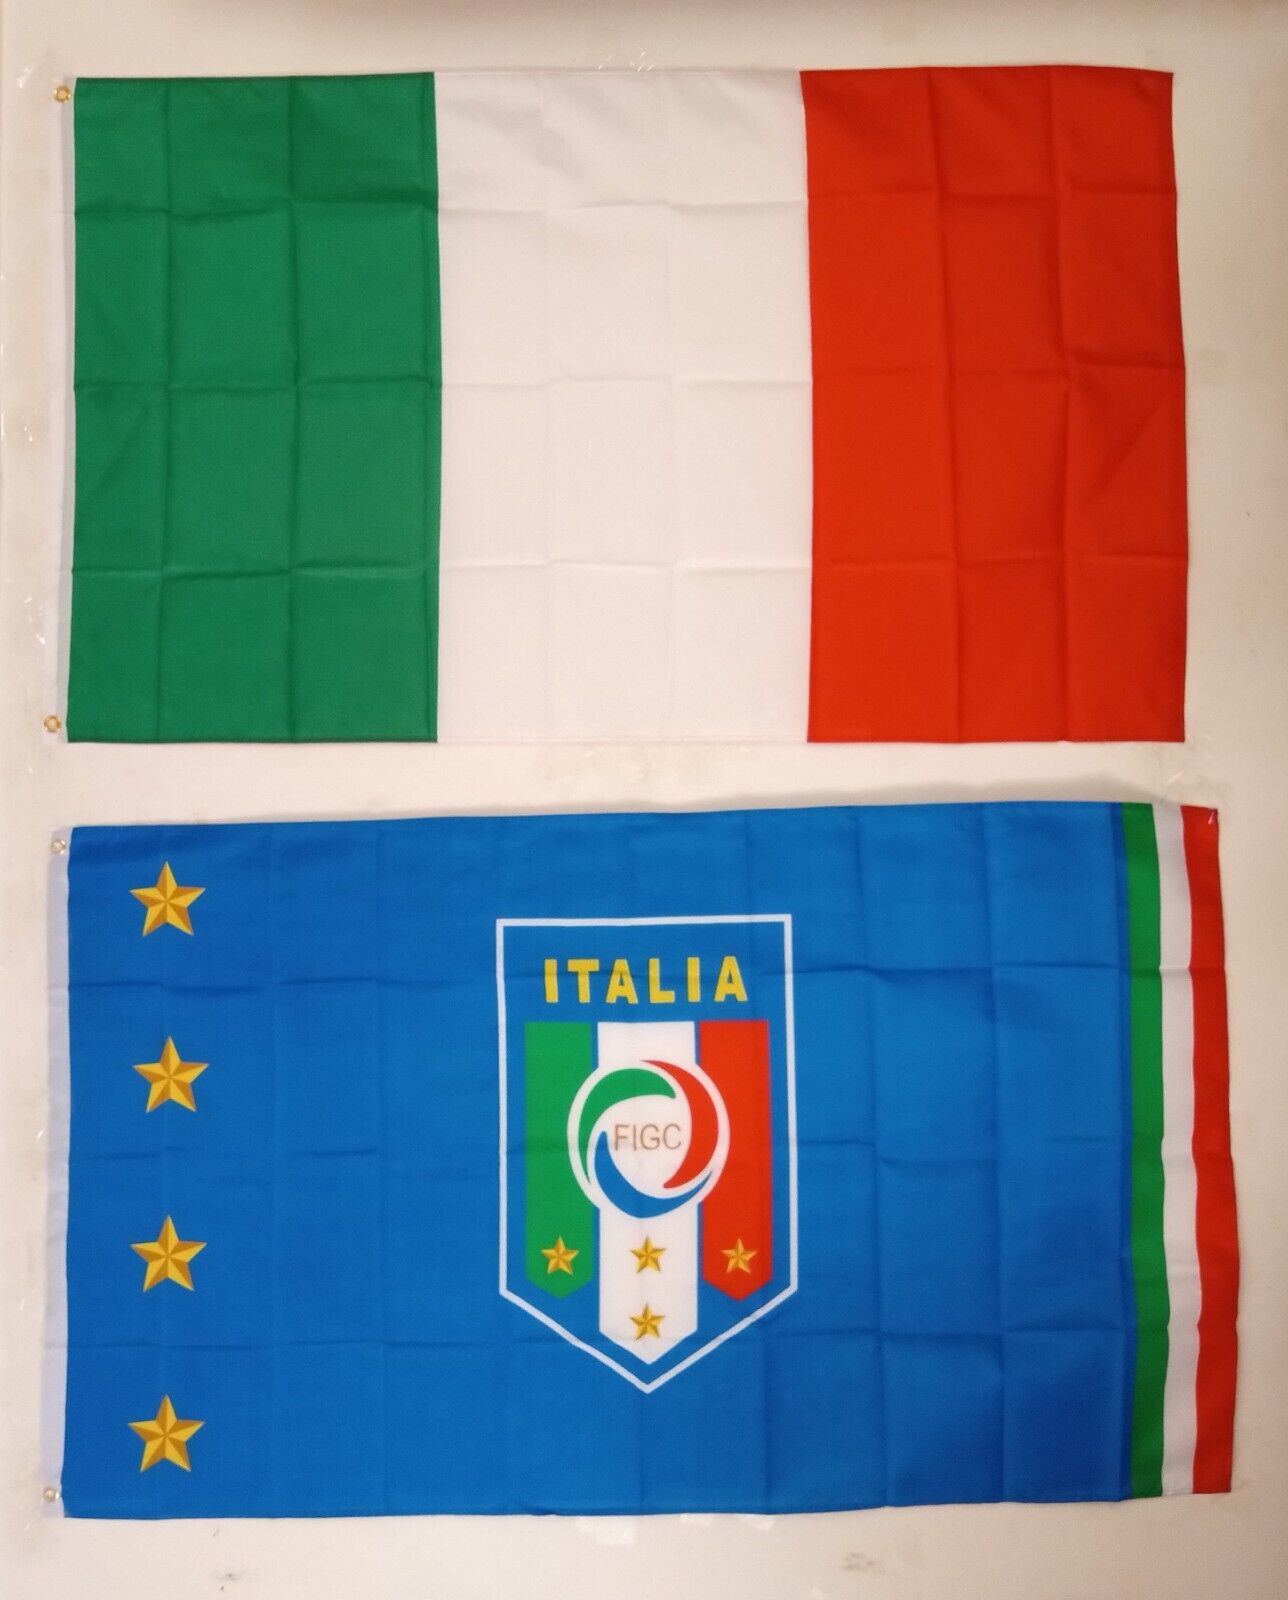 1 ITALY FEDERATION FLAG (3x5 FT) + 1 ITALIAN FLAG (3X5 FT) $35